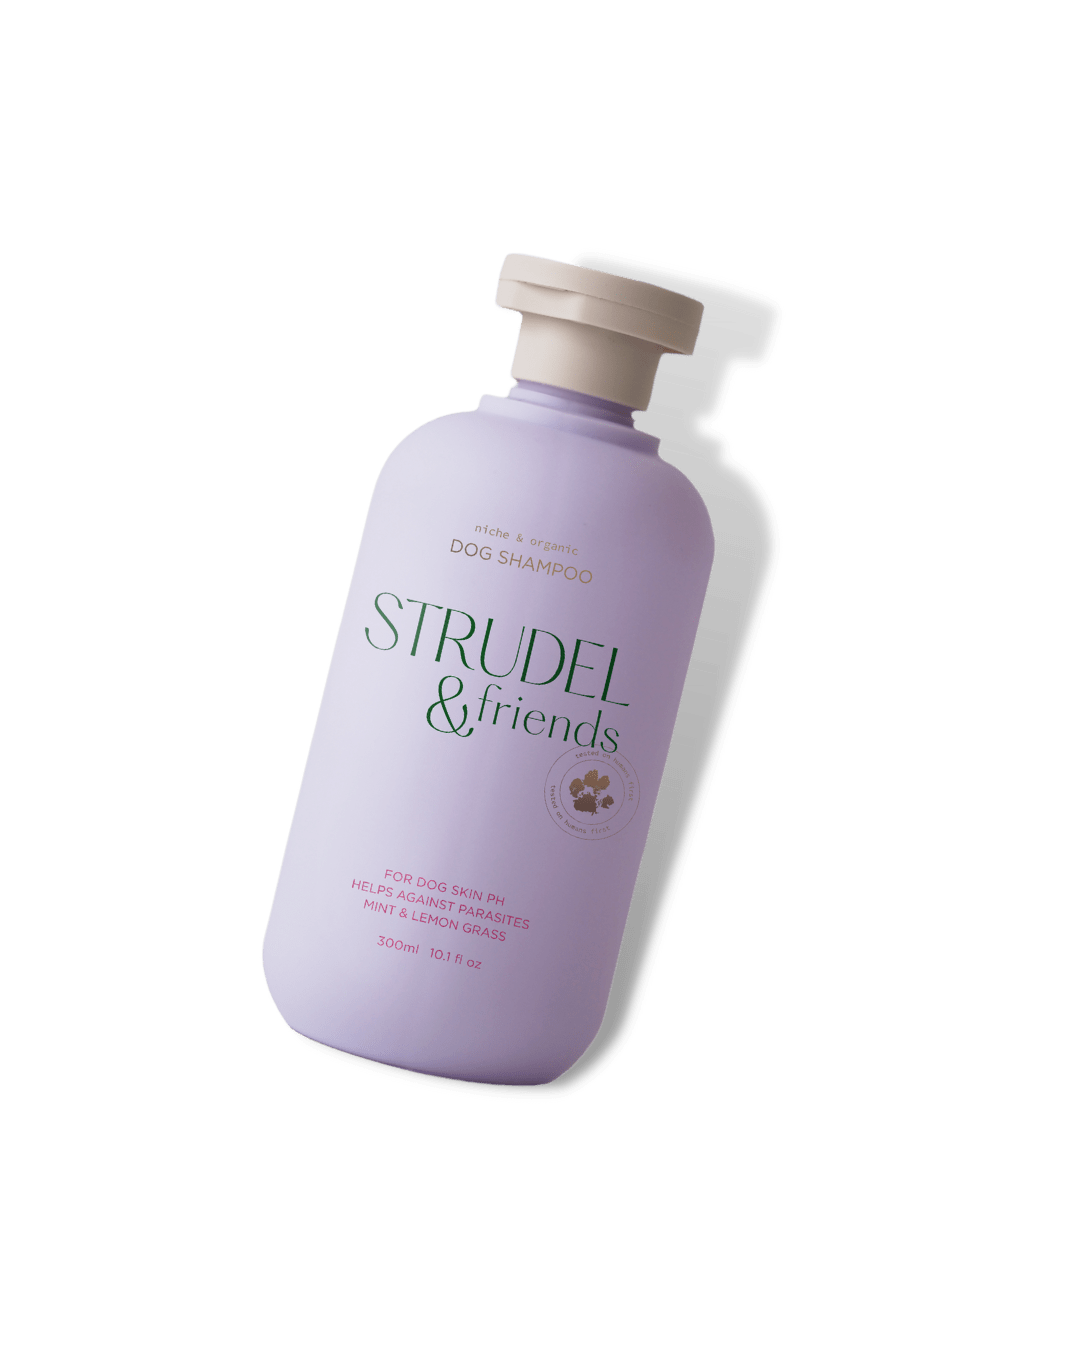 Přírodní šampon STRUDEL & FRIENDS 300 ml